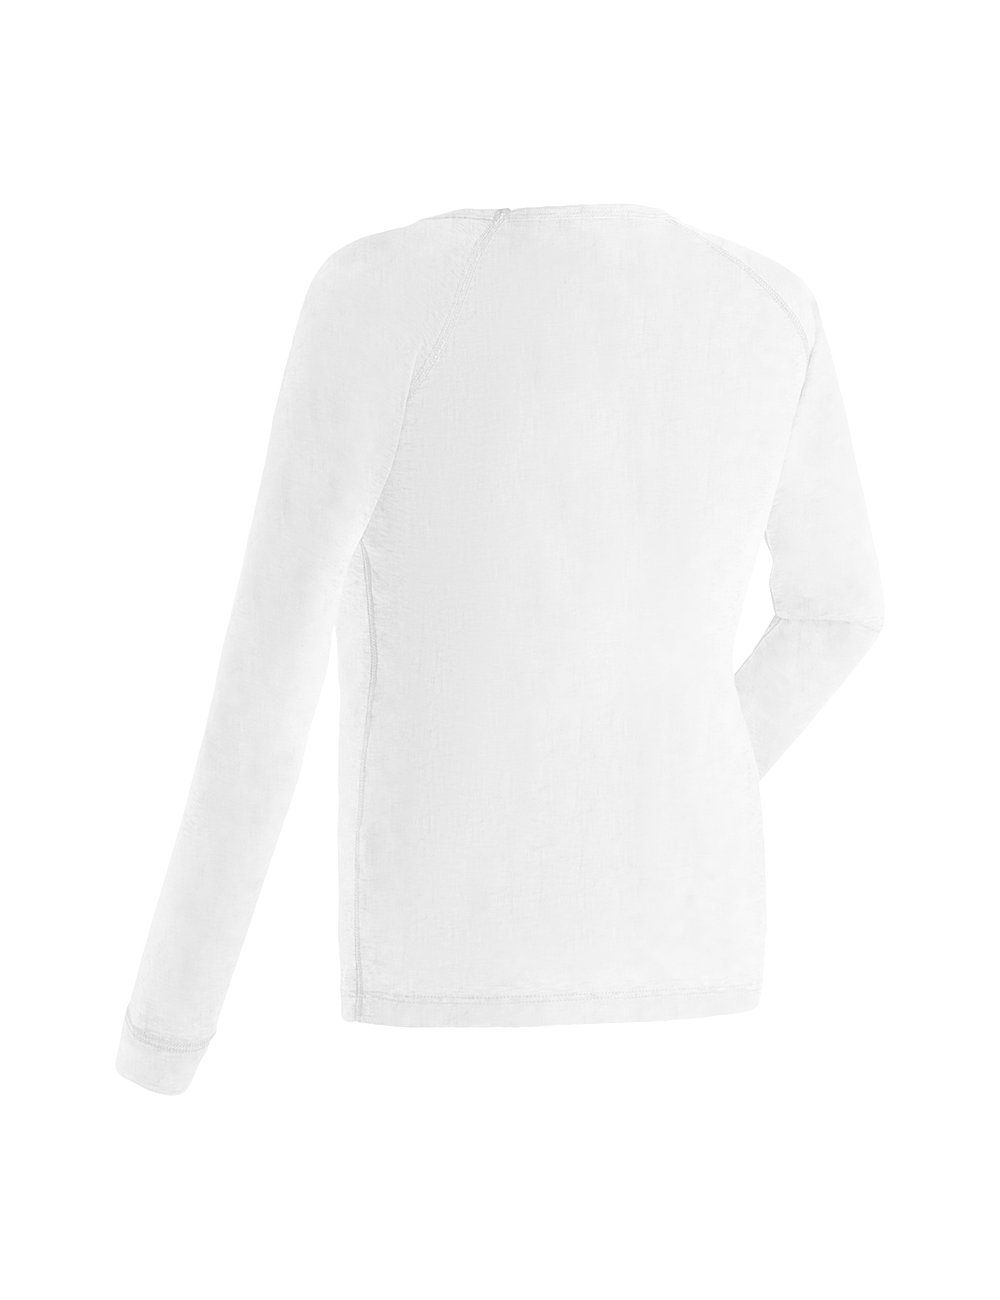 Hose Schnelltrocknende, Sports atmungsaktive Maier & weiß Funktionswäsche Shirt Kim